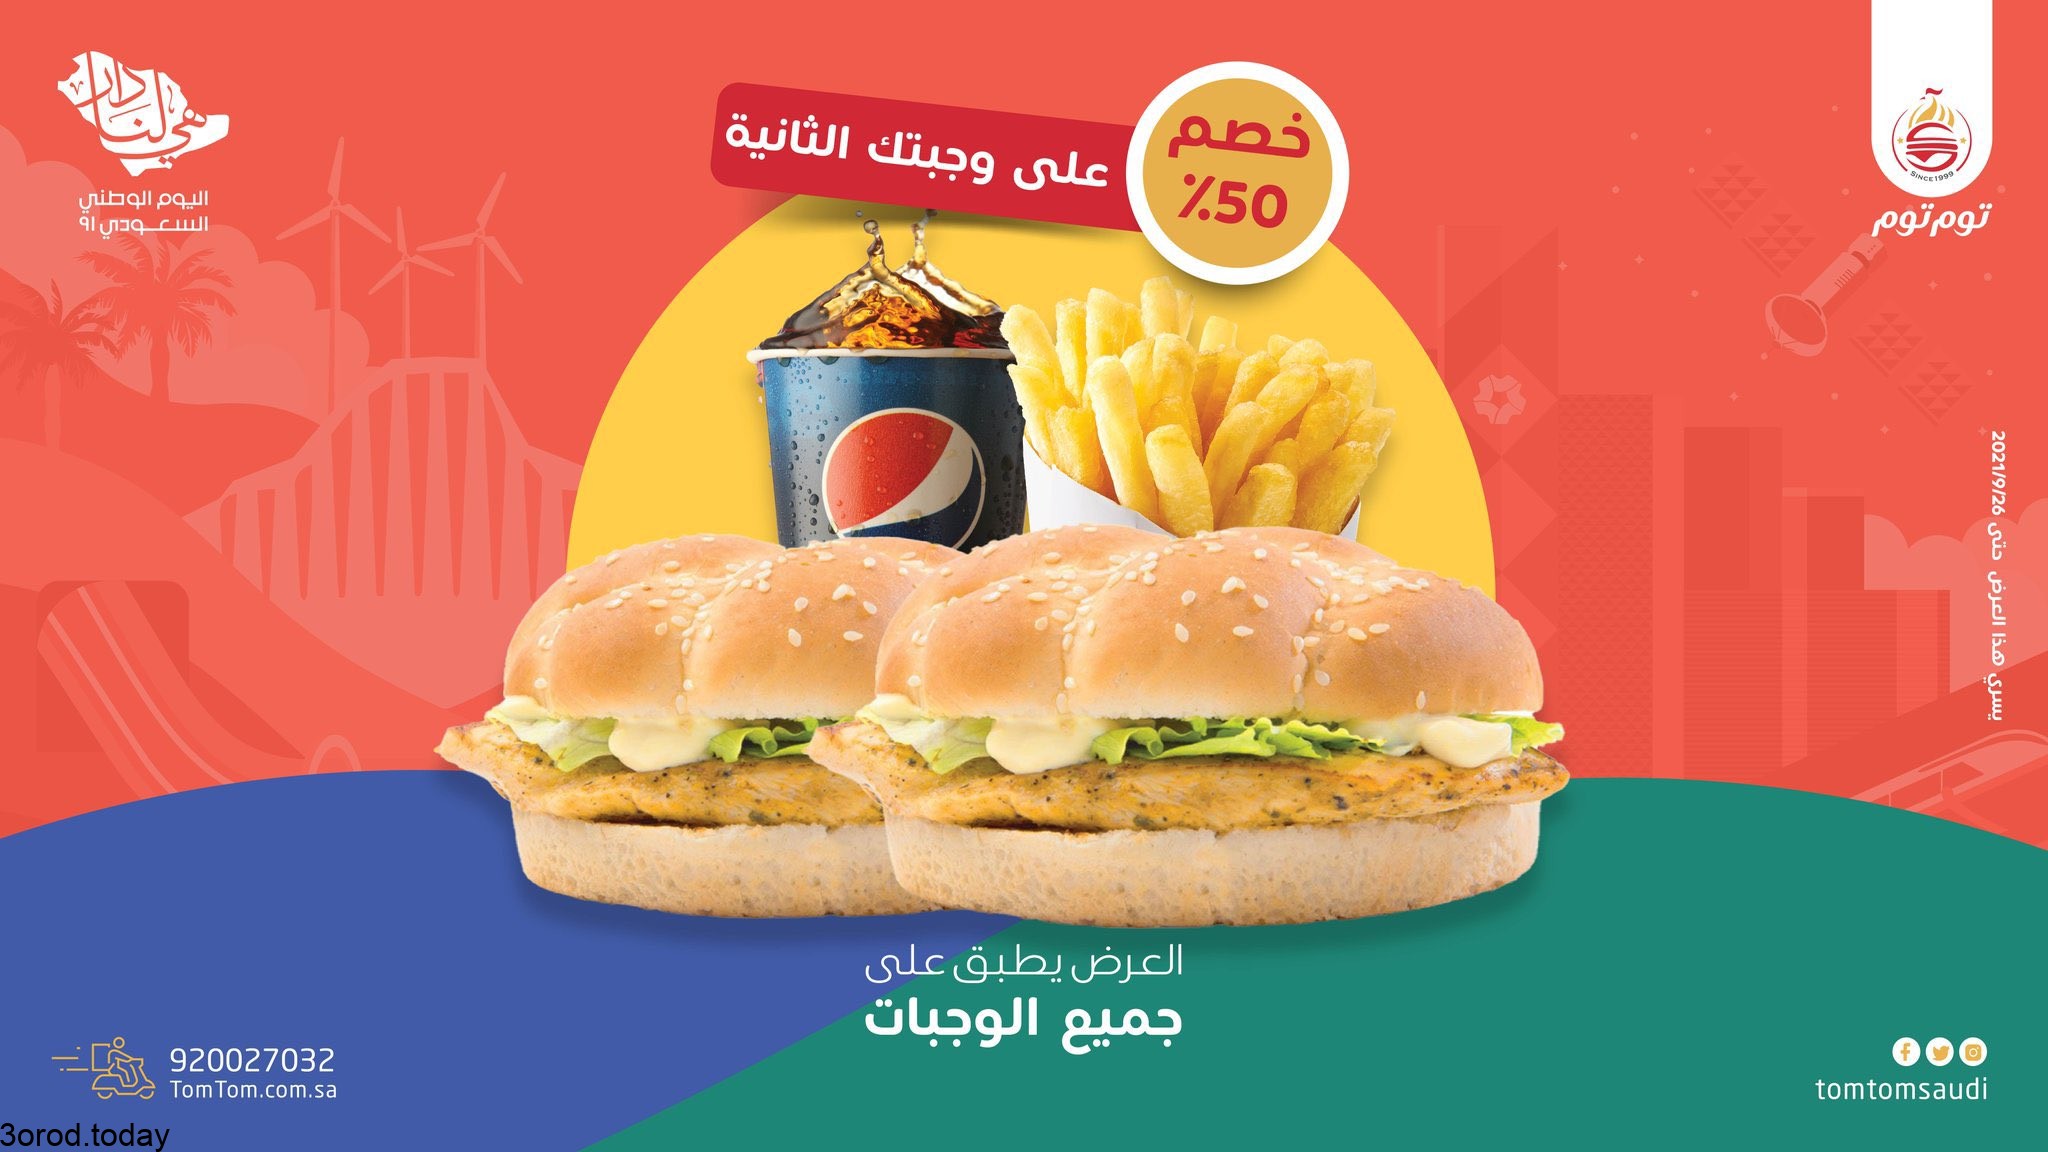 عروض اليوم الوطني مطاعم .. قائمة بأبرز عروض مطاعم هرفي - ماكدونالدز في اليوم الوطني السعودي 2022